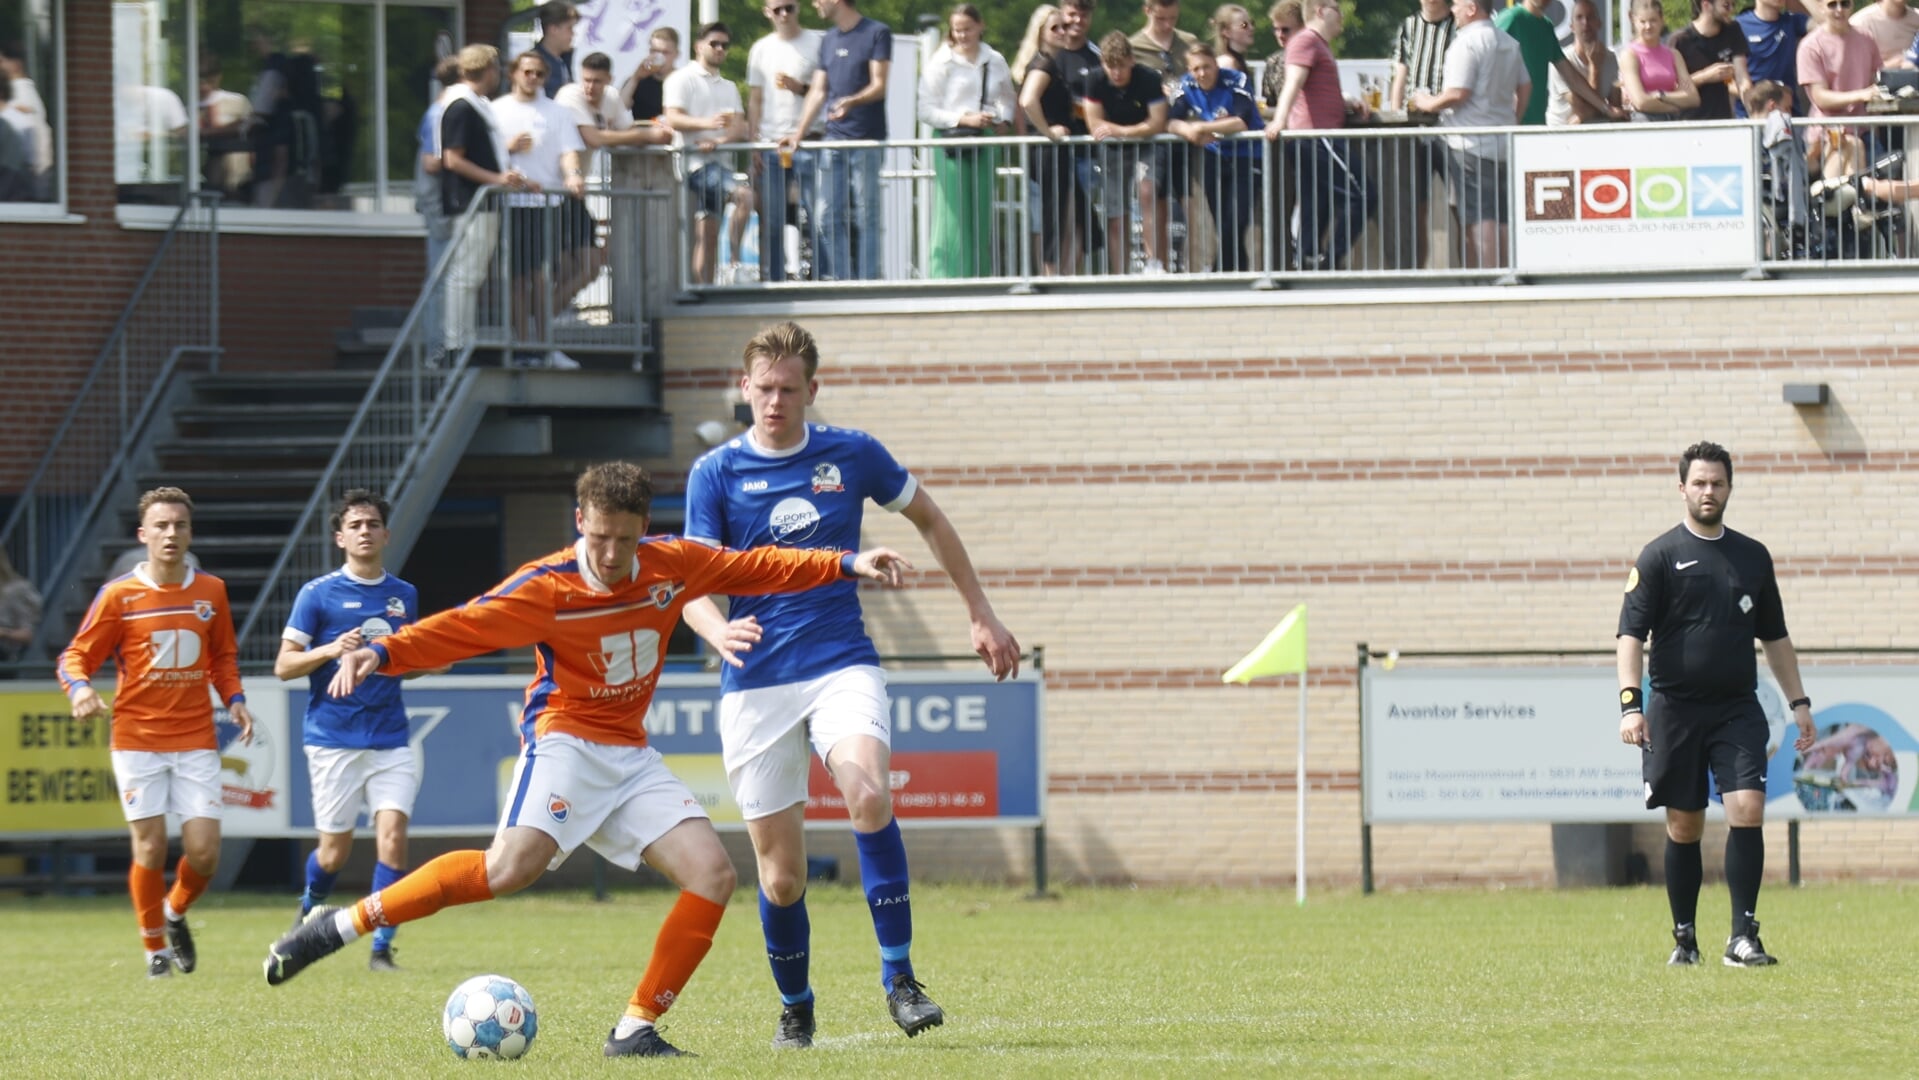 Olympia'18 wacht in de KNVB-districtsbeker derby's tegen SSS'18 en Volharding.